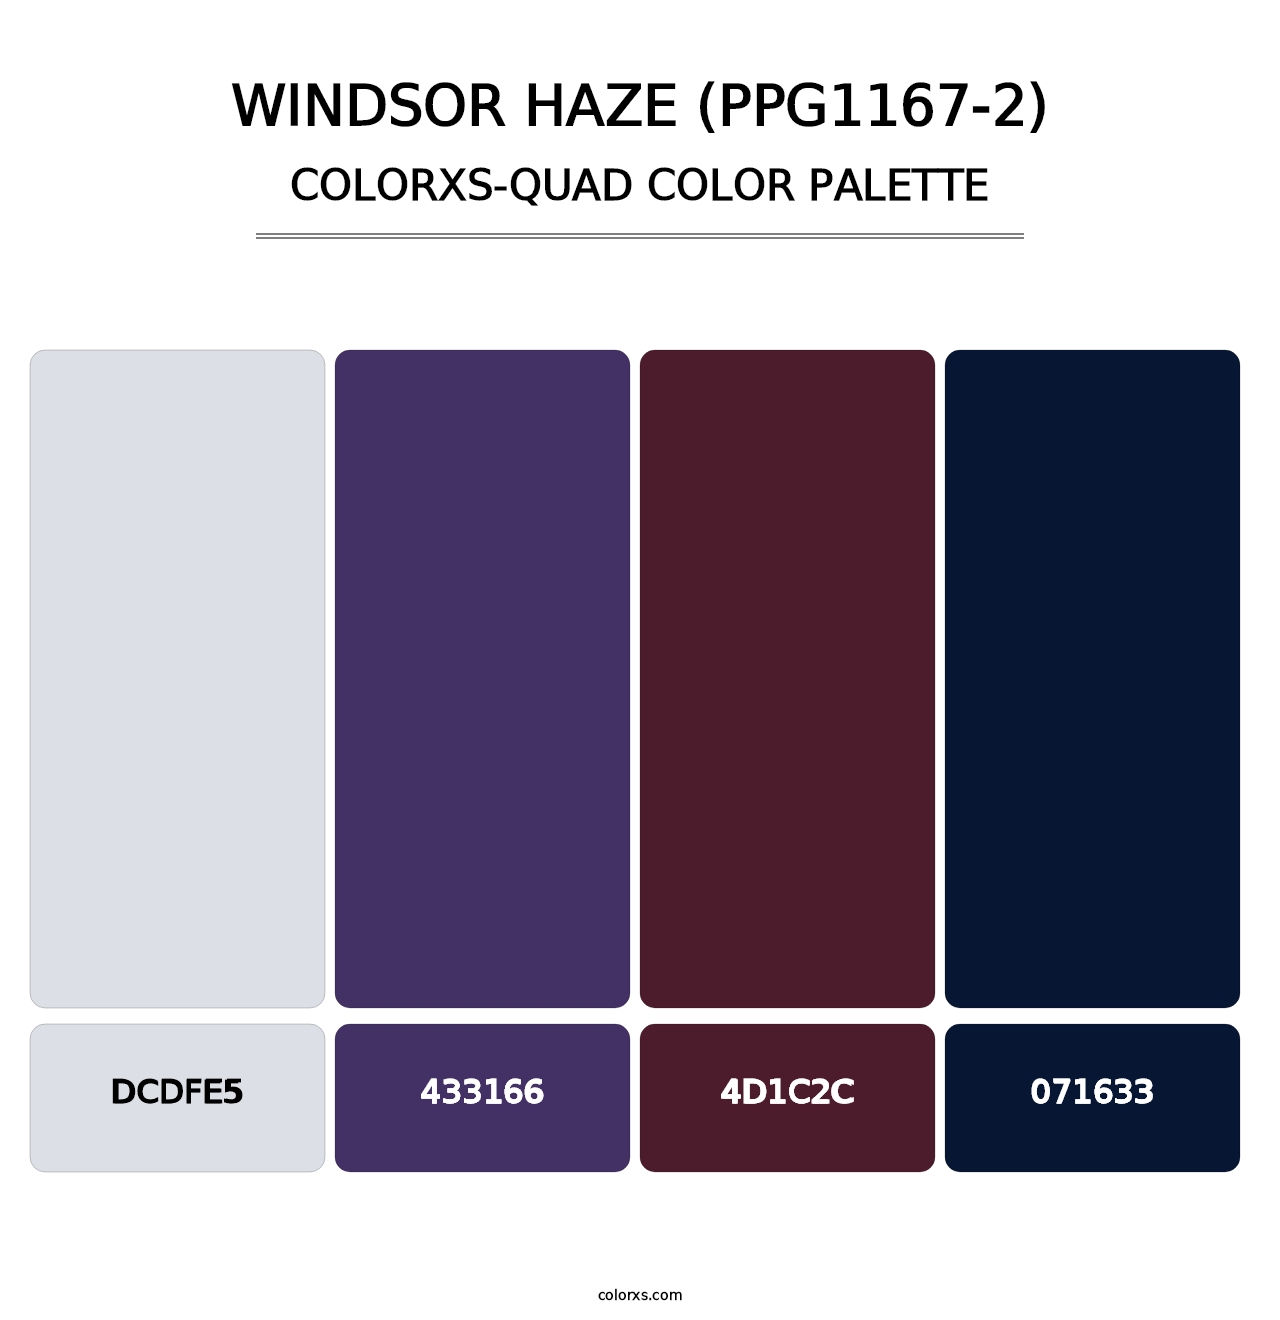 Windsor Haze (PPG1167-2) - Colorxs Quad Palette